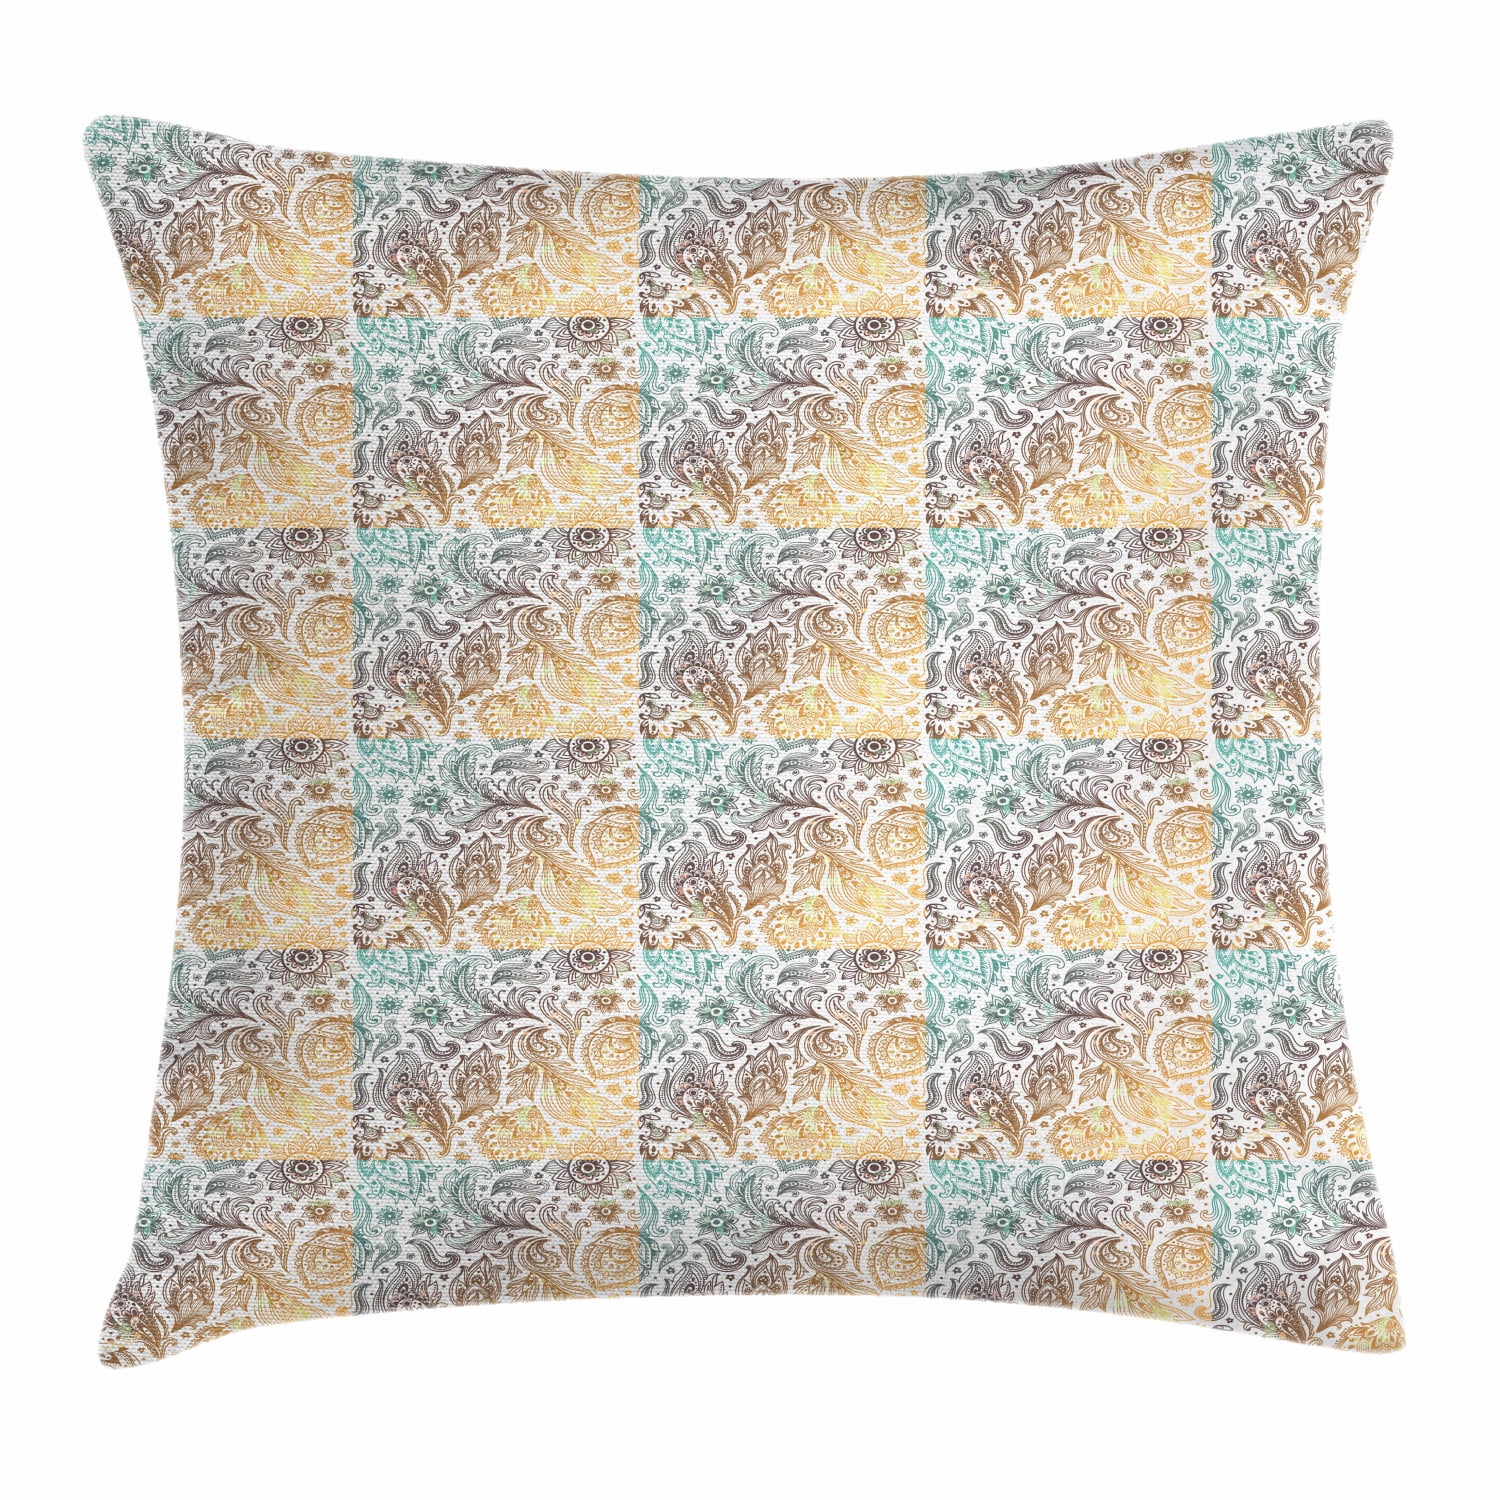 Winter in Bloom Design Plush Chenille Square 17 x 17 Cushion Cover Pillowcase 